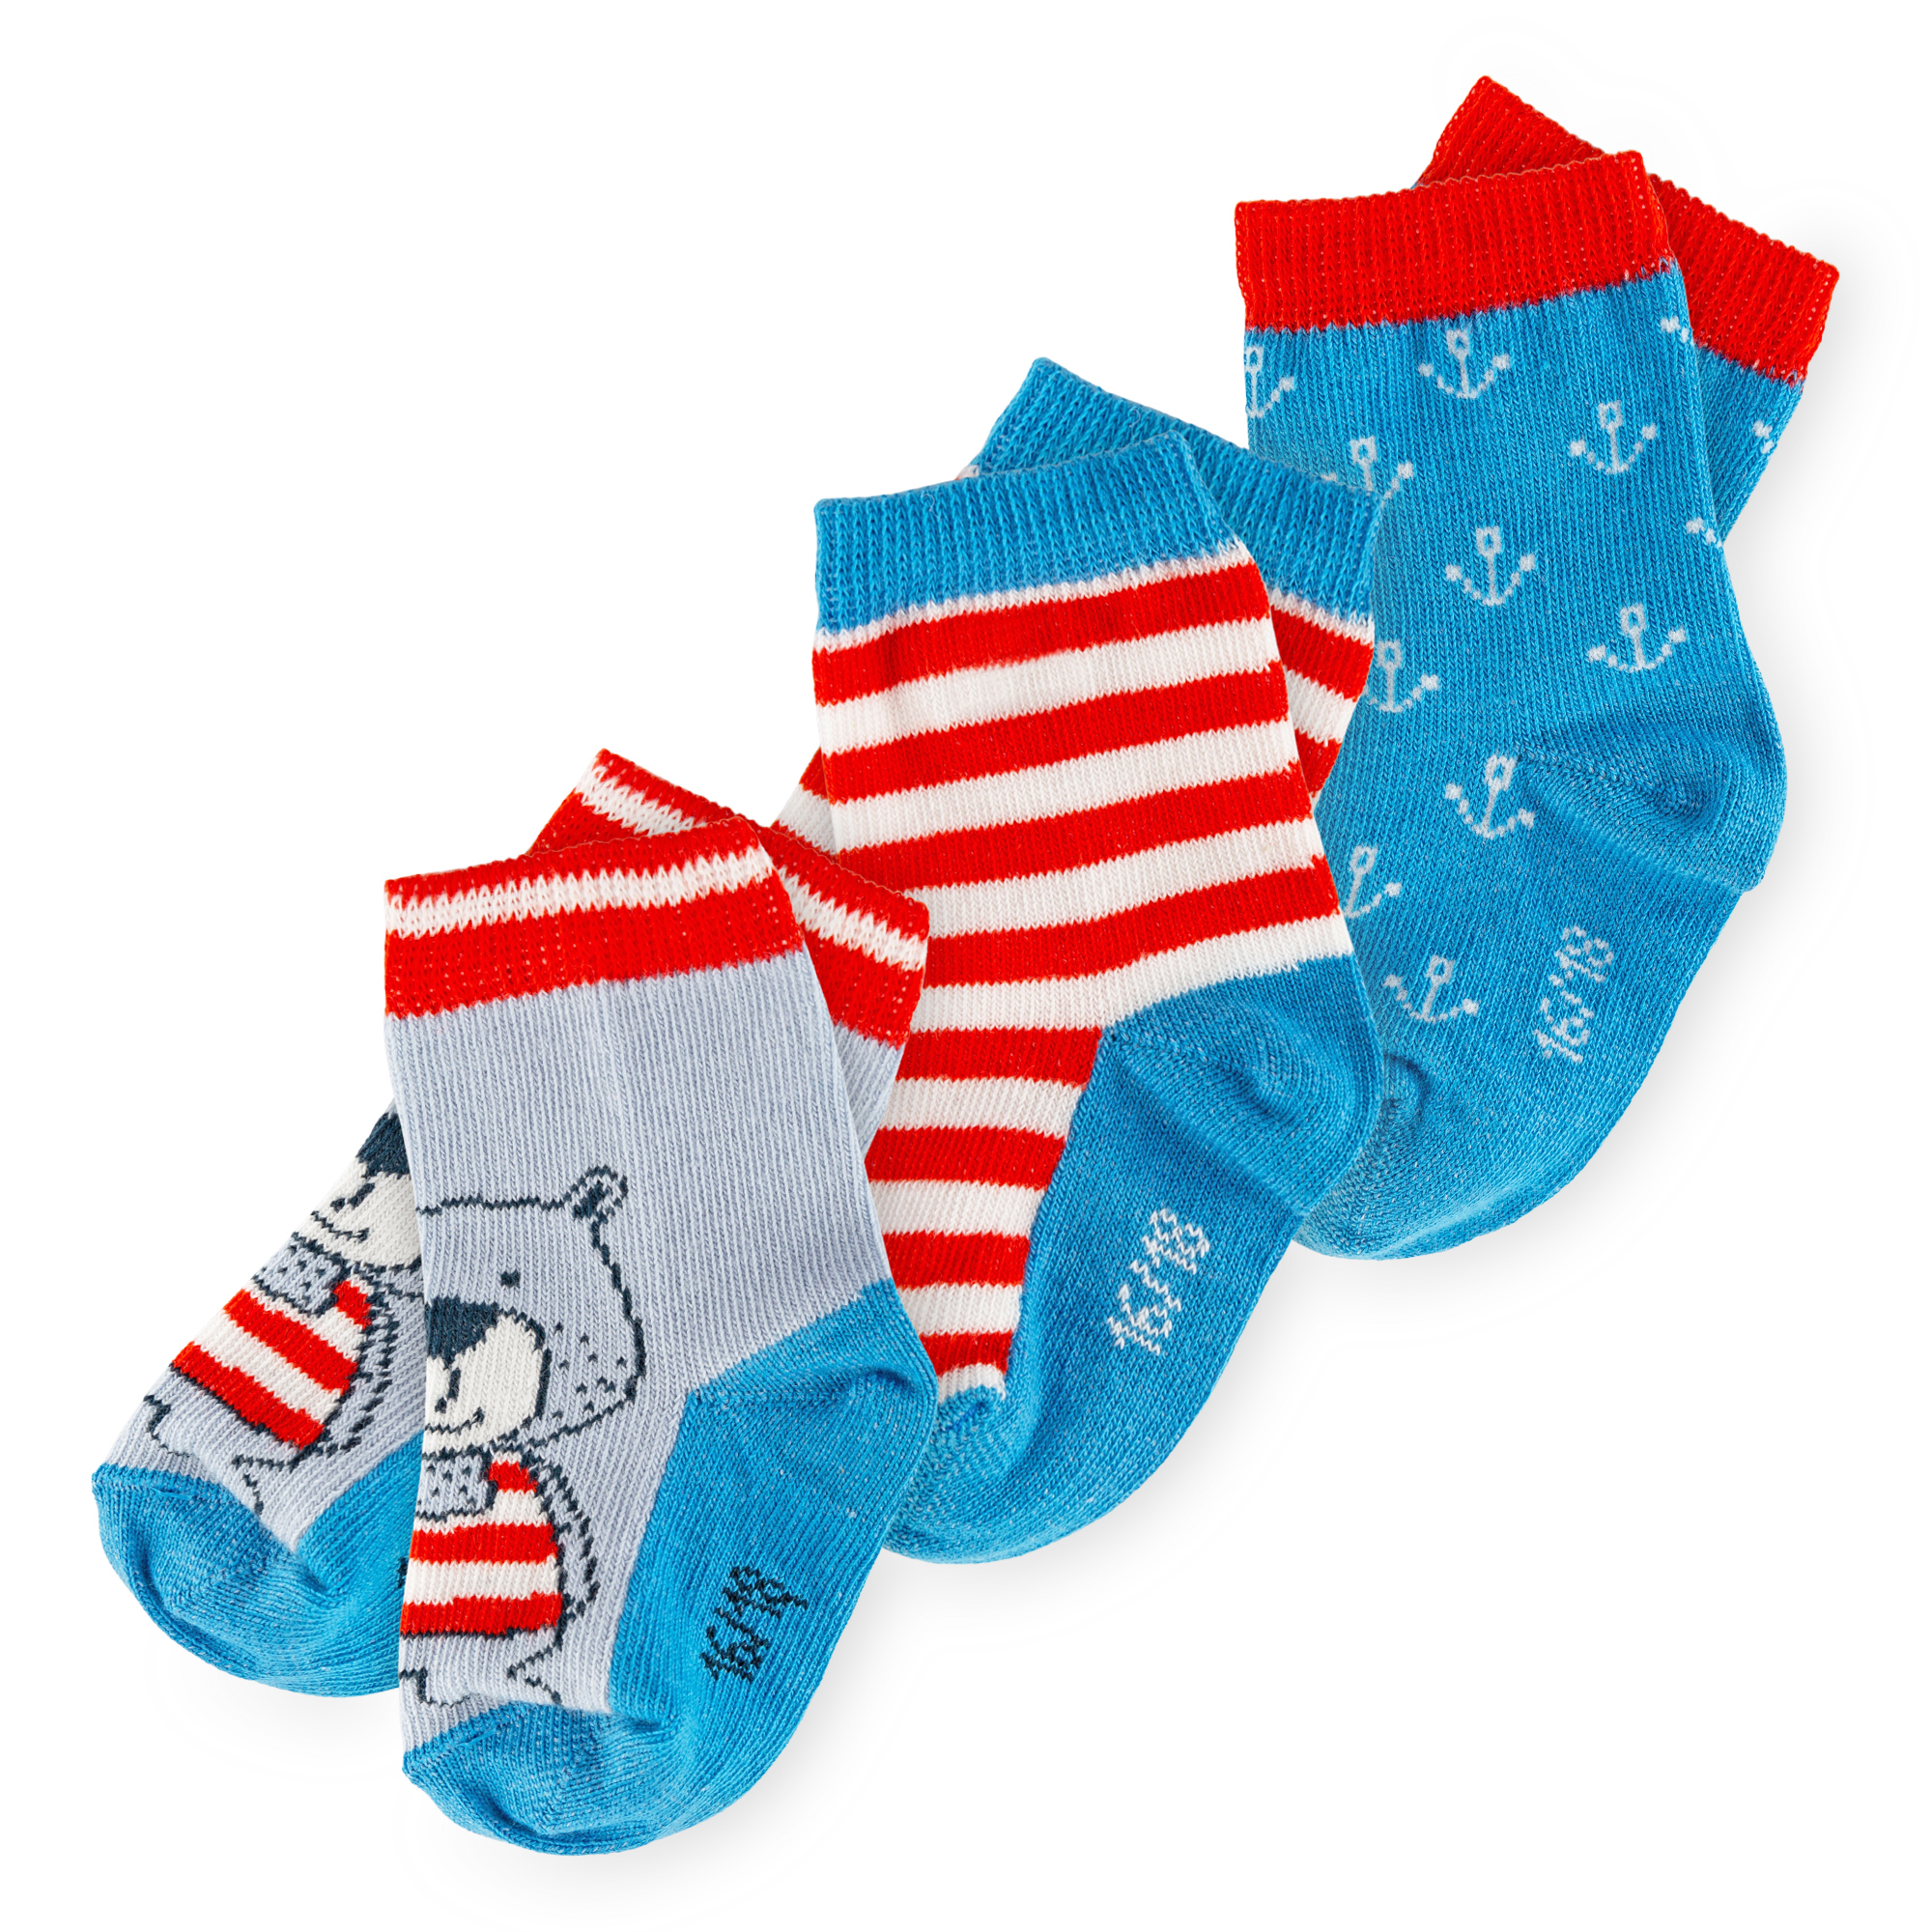 3 pair set children's socks